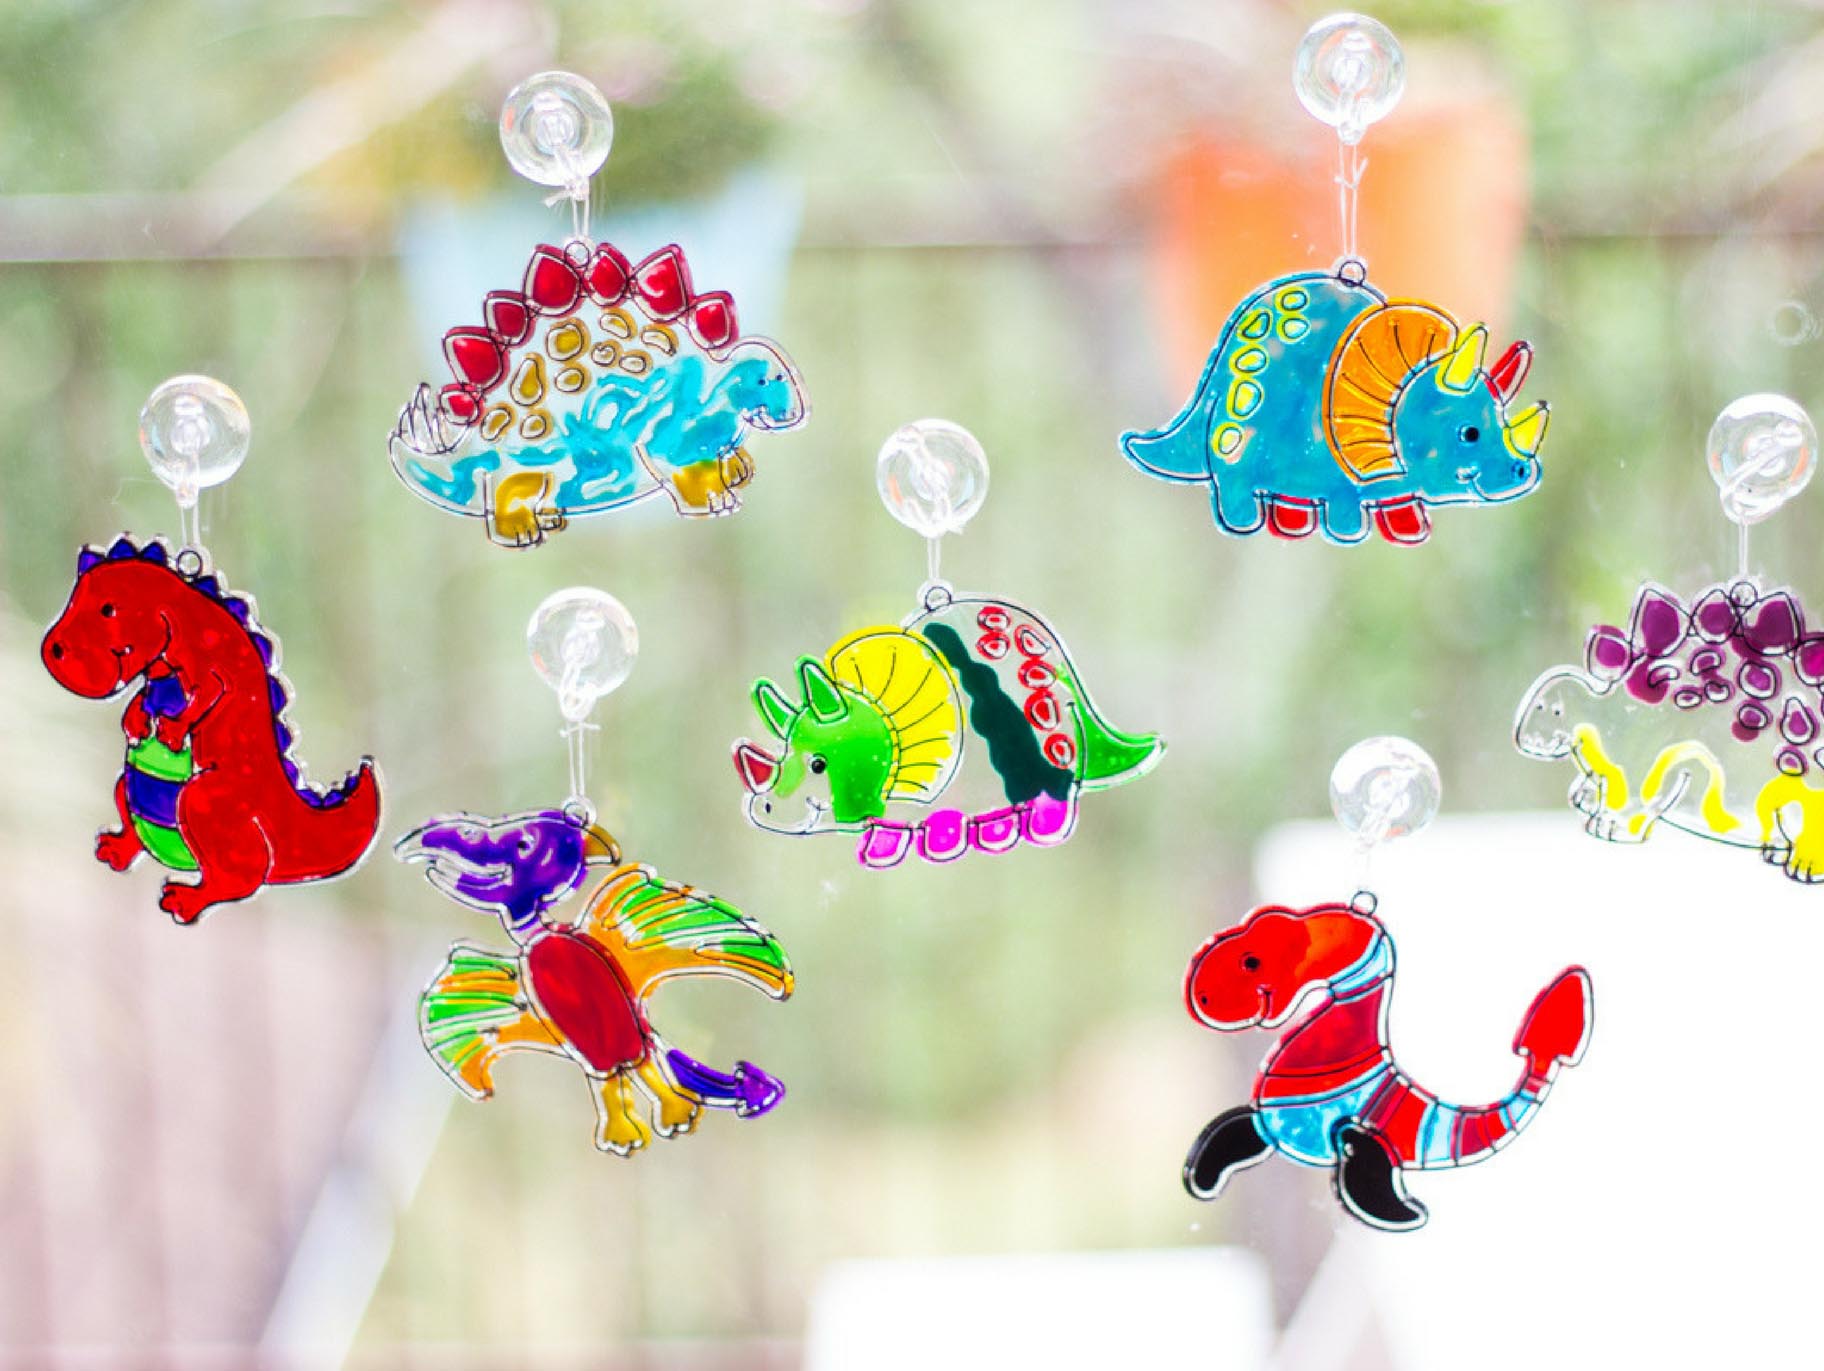 Dinosaur Suncatcher Kit for Kids, Dinosaur Window Art Craft Kit for Boys  and